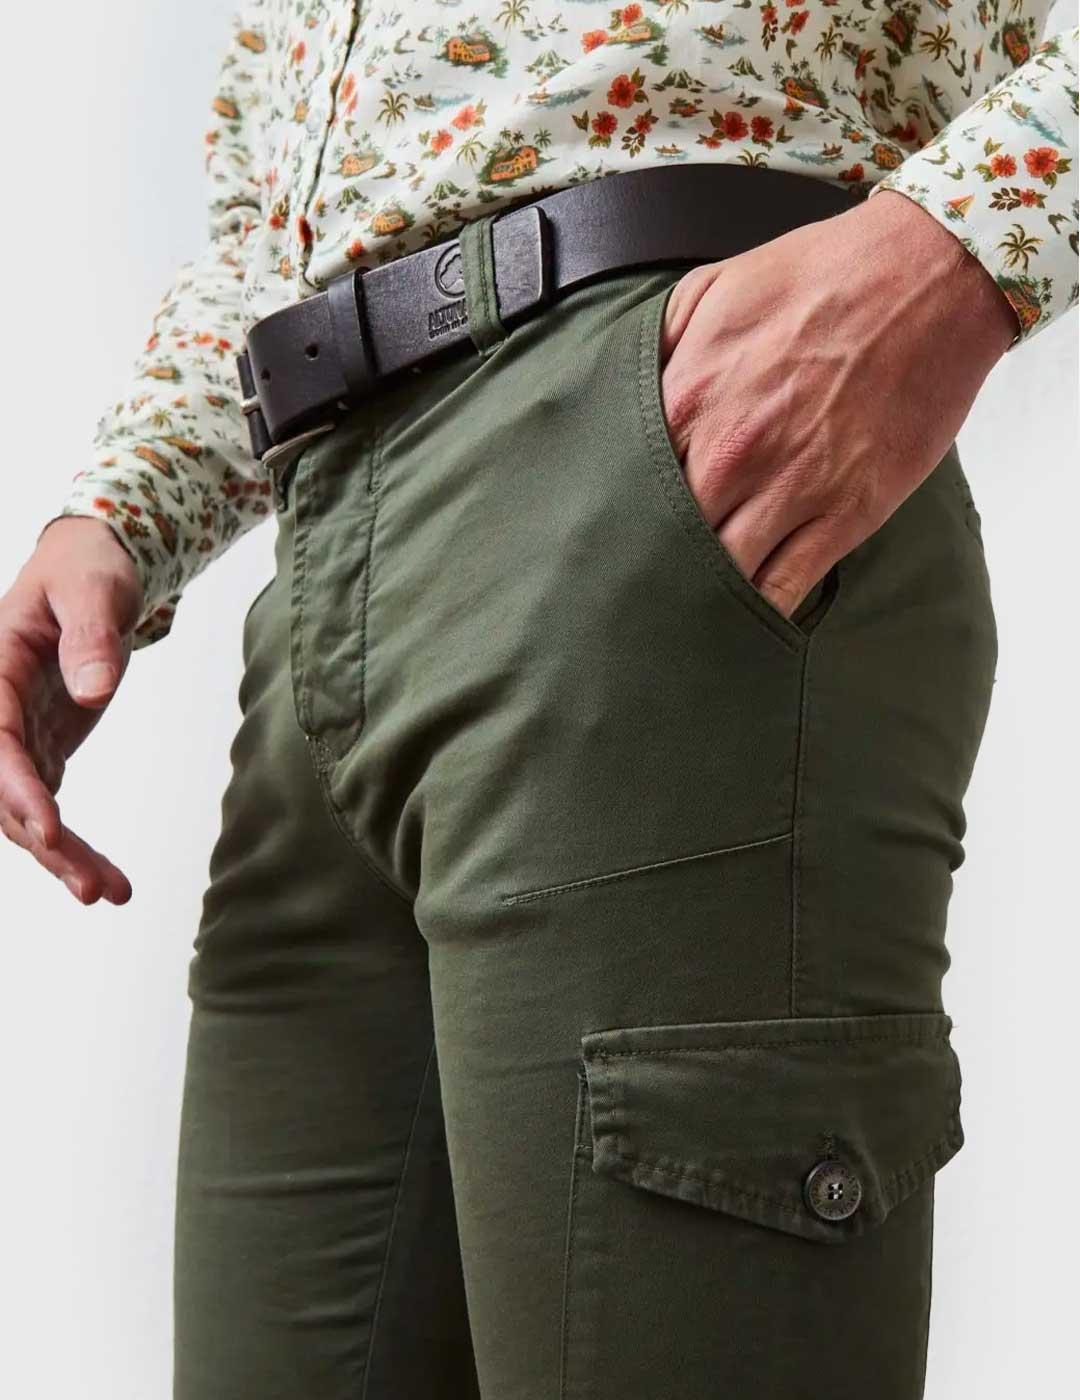 Pantalón Altonadock Cargo Slim verde para hombre